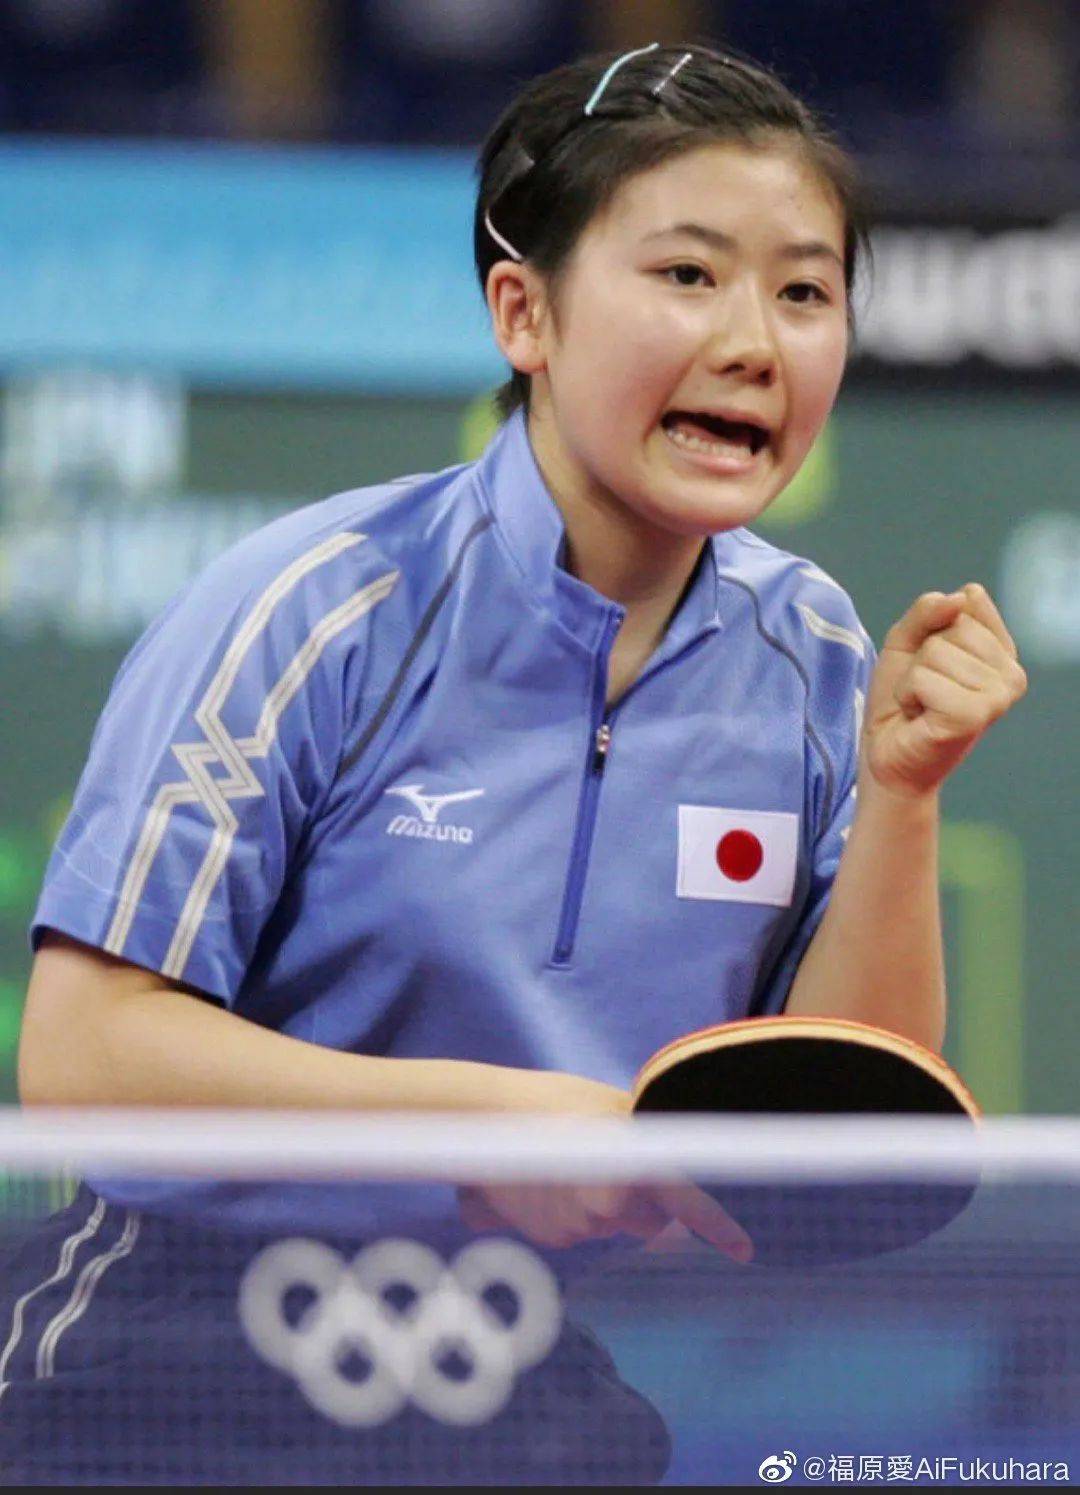 福原爱曾是日本知名乒乓球运动员,虽然是日本人,但福原爱却在中国有着